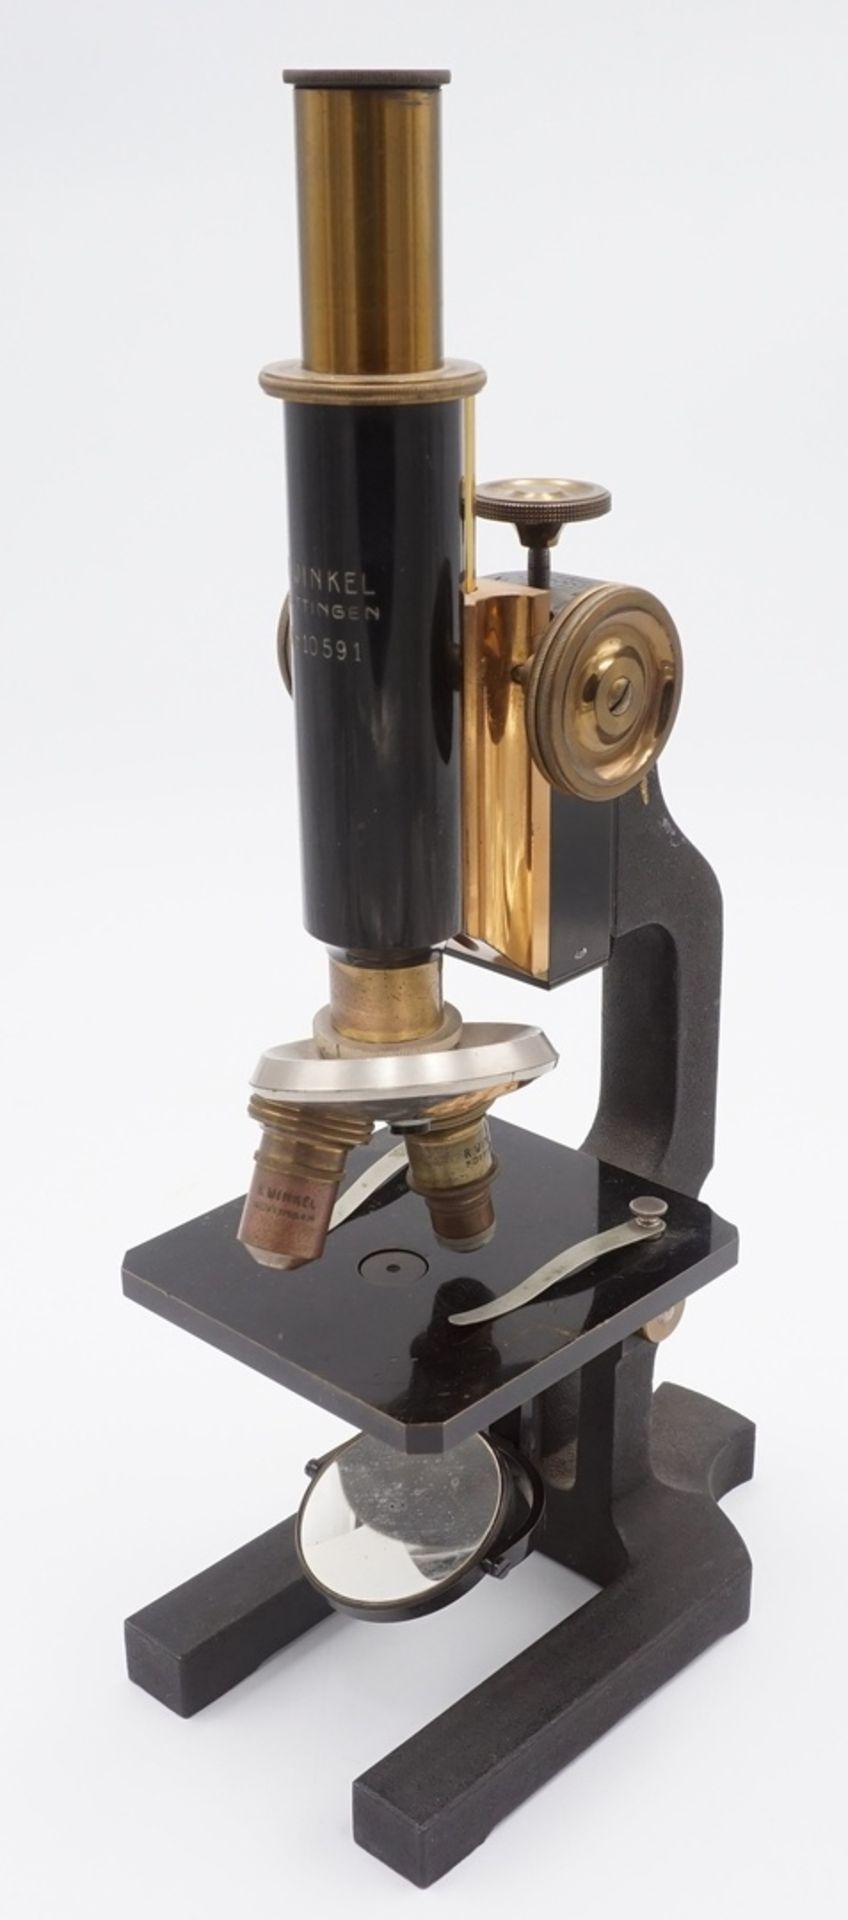 Zwei Spiegelmikroskope 1. Hälfte 19. Jh.1) R. Winkel Göttingen Kosmos Mikroskop Nr. 10591, 1. Hälfte - Bild 2 aus 5